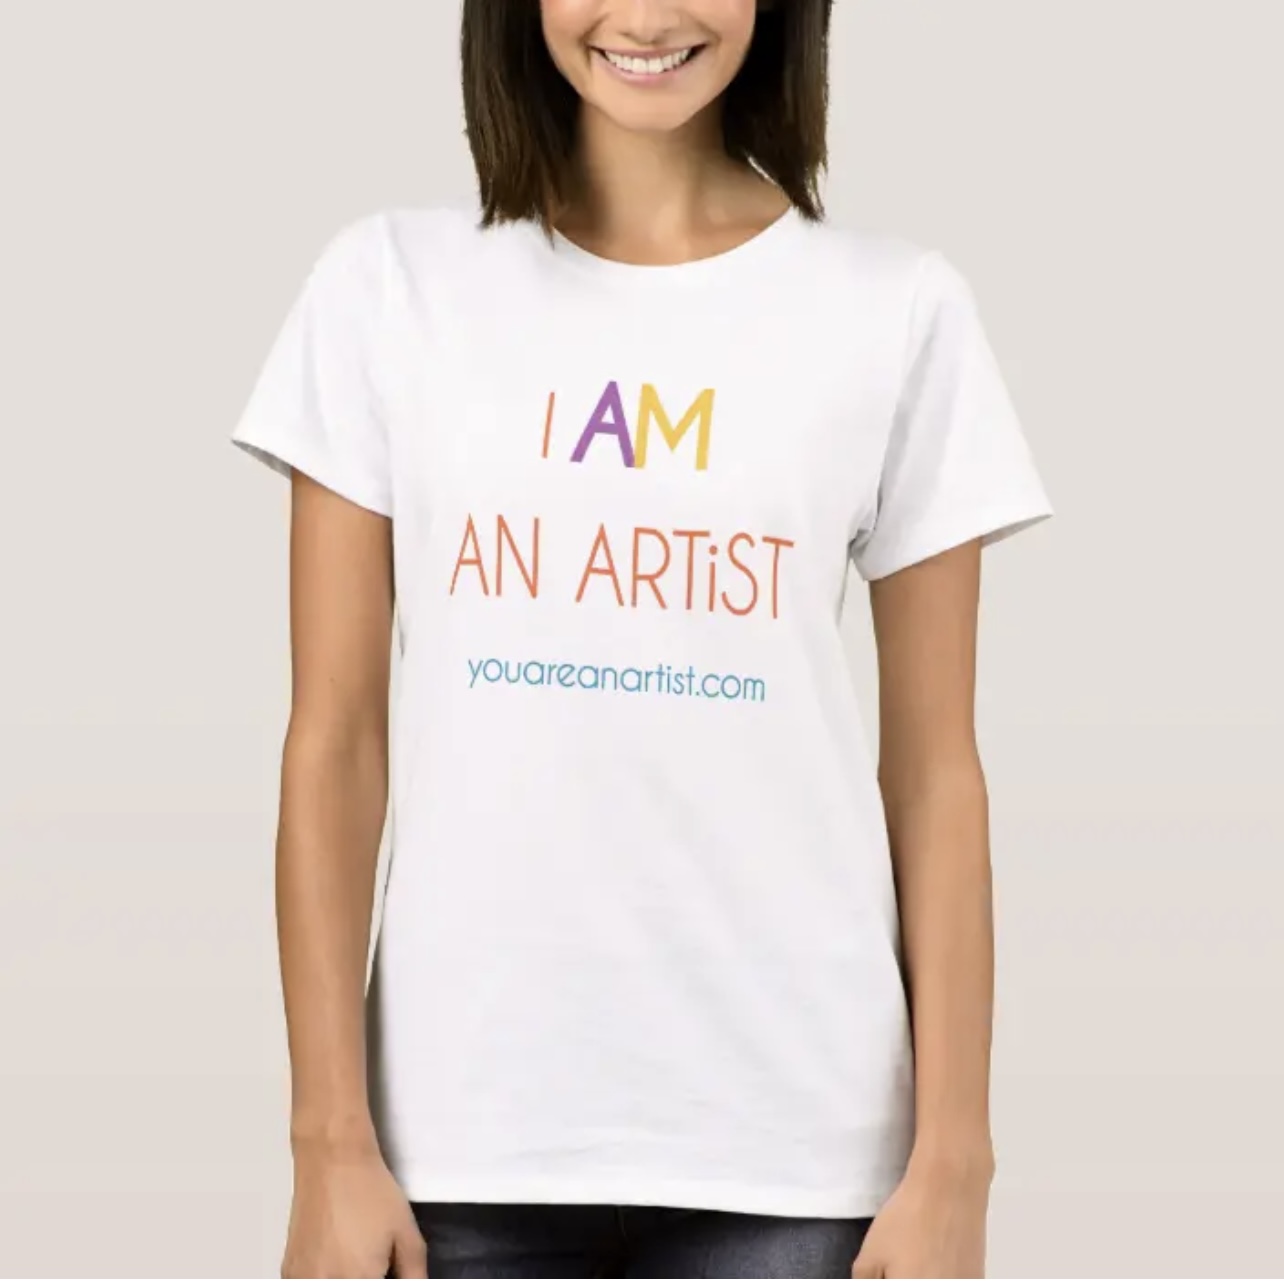 ufravigelige gaben skære ned I AM an ARTiST t-shirt for Women - You ARE an ARTiST!